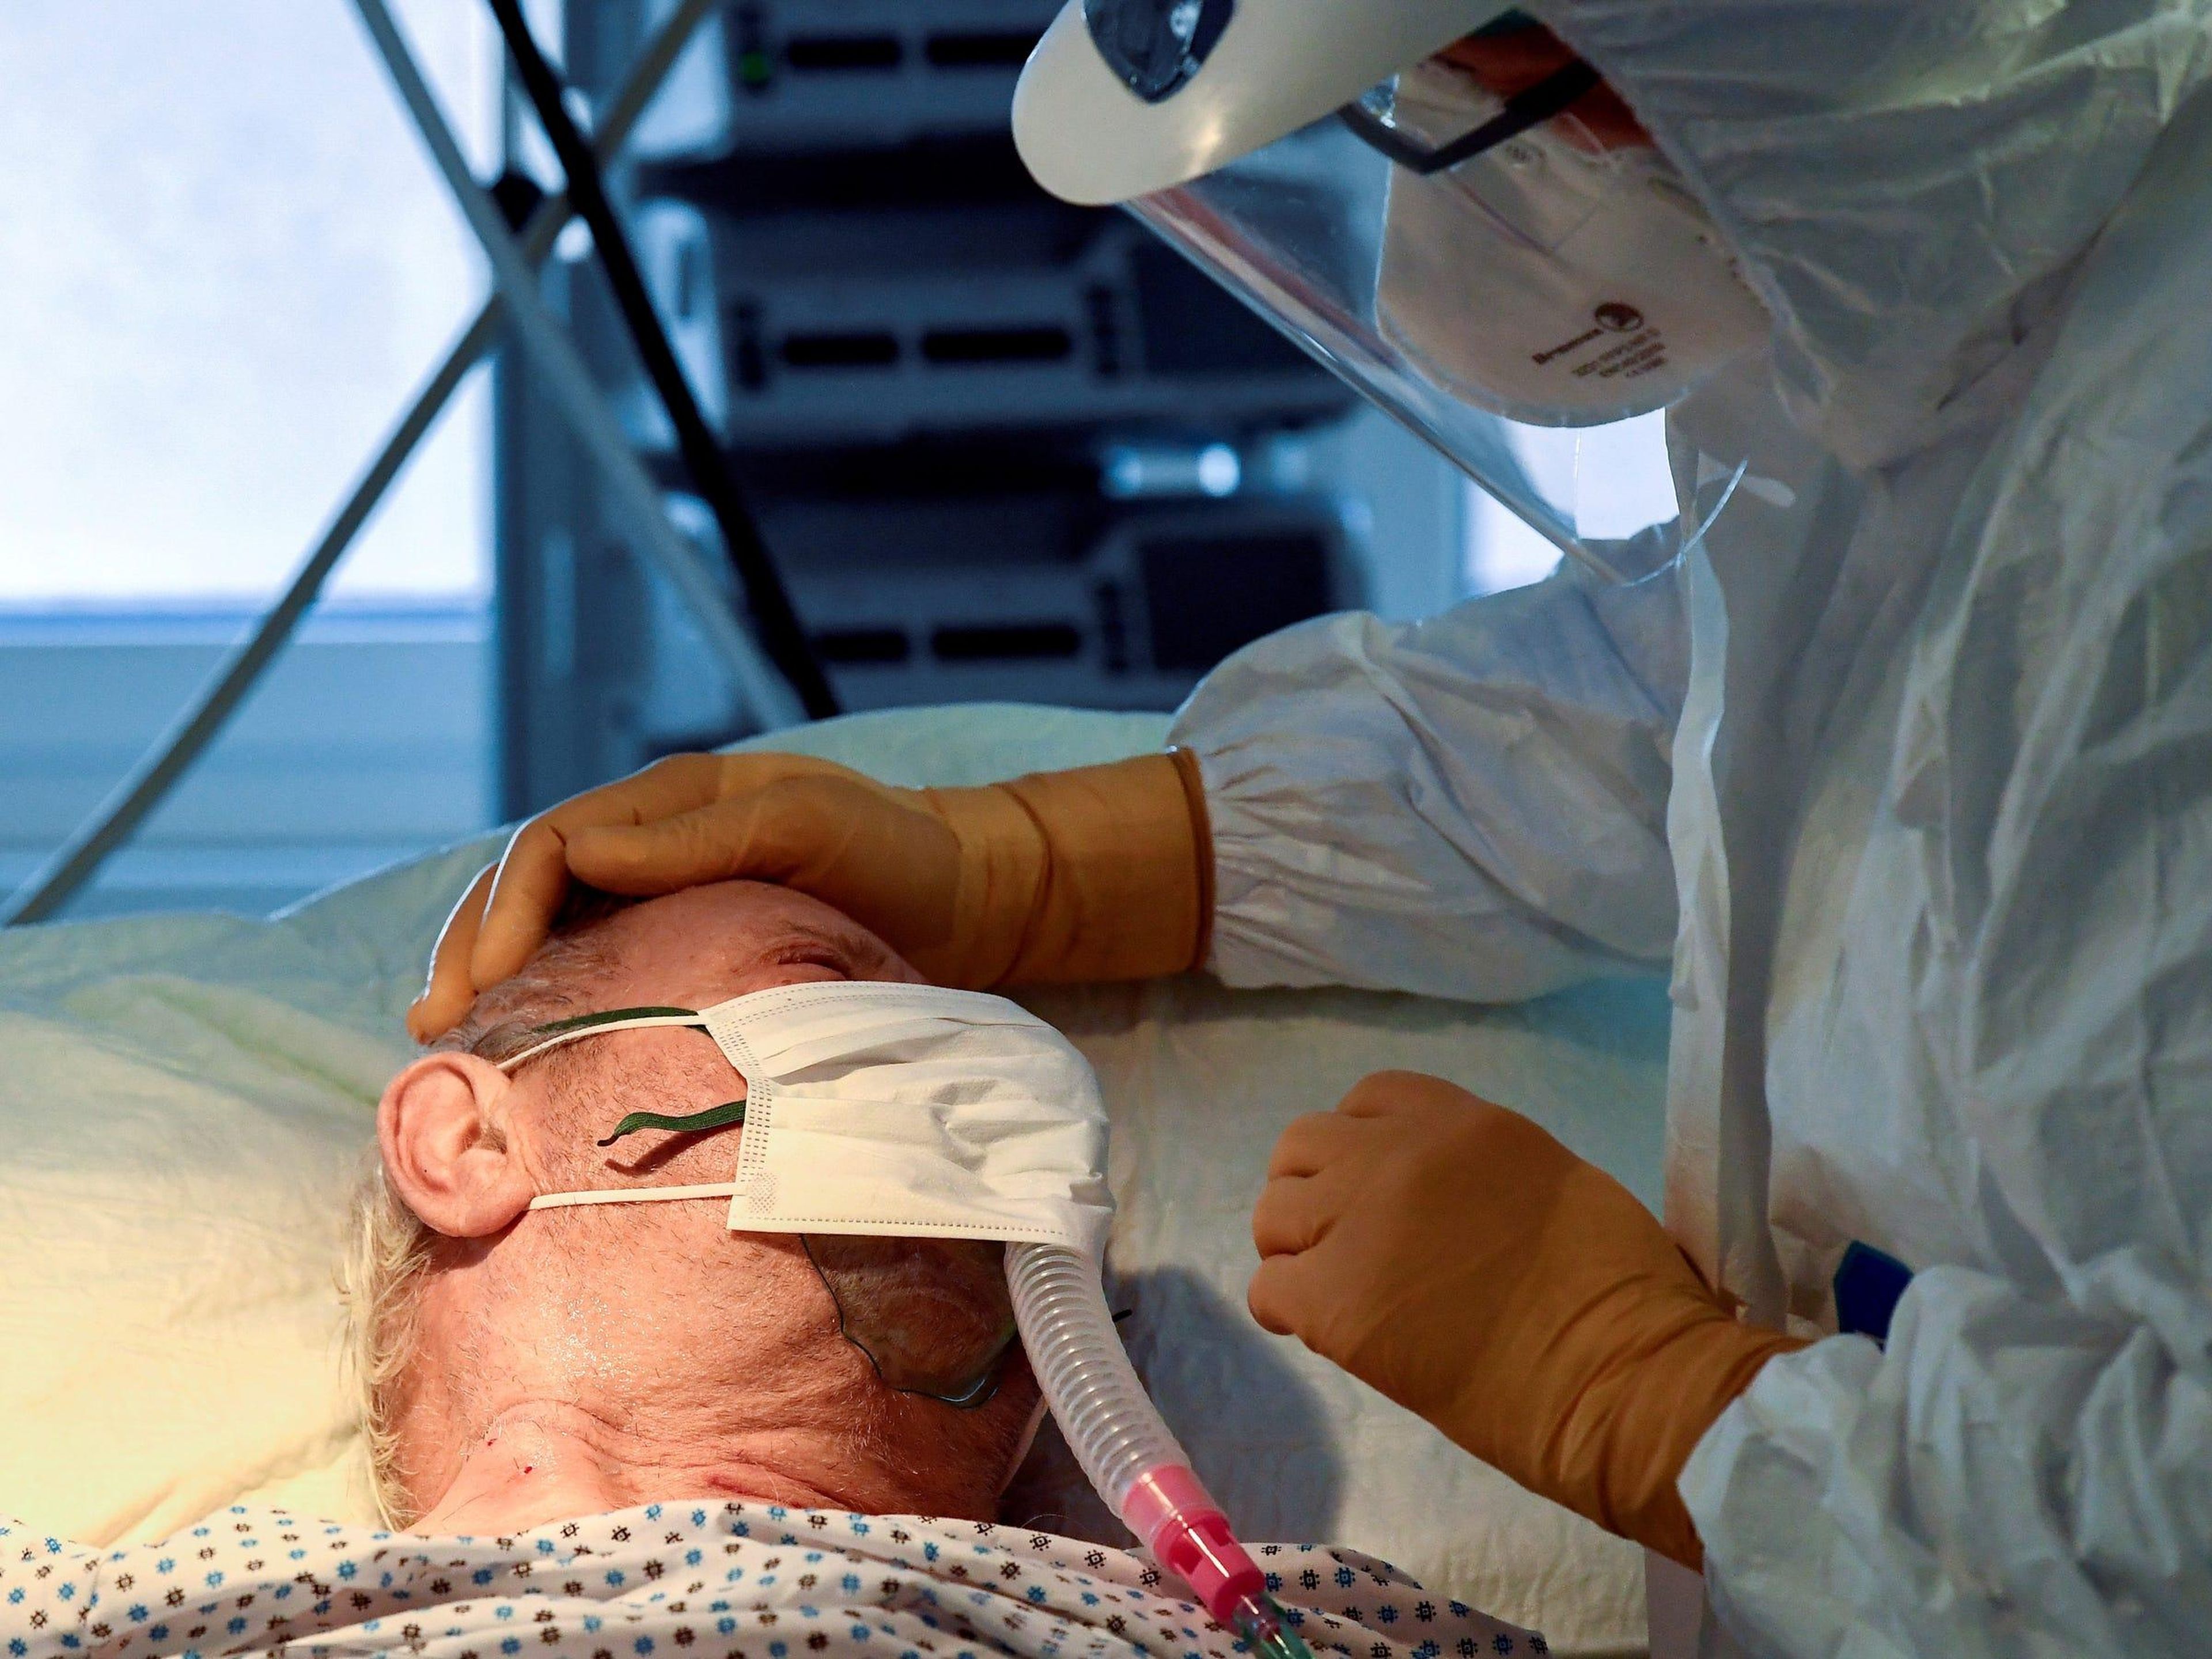 Un paciente con coronavirus en la unidad de cuidados intensivos del hospital Circolo de Varese, Italia, el 9 de abril de 2020.